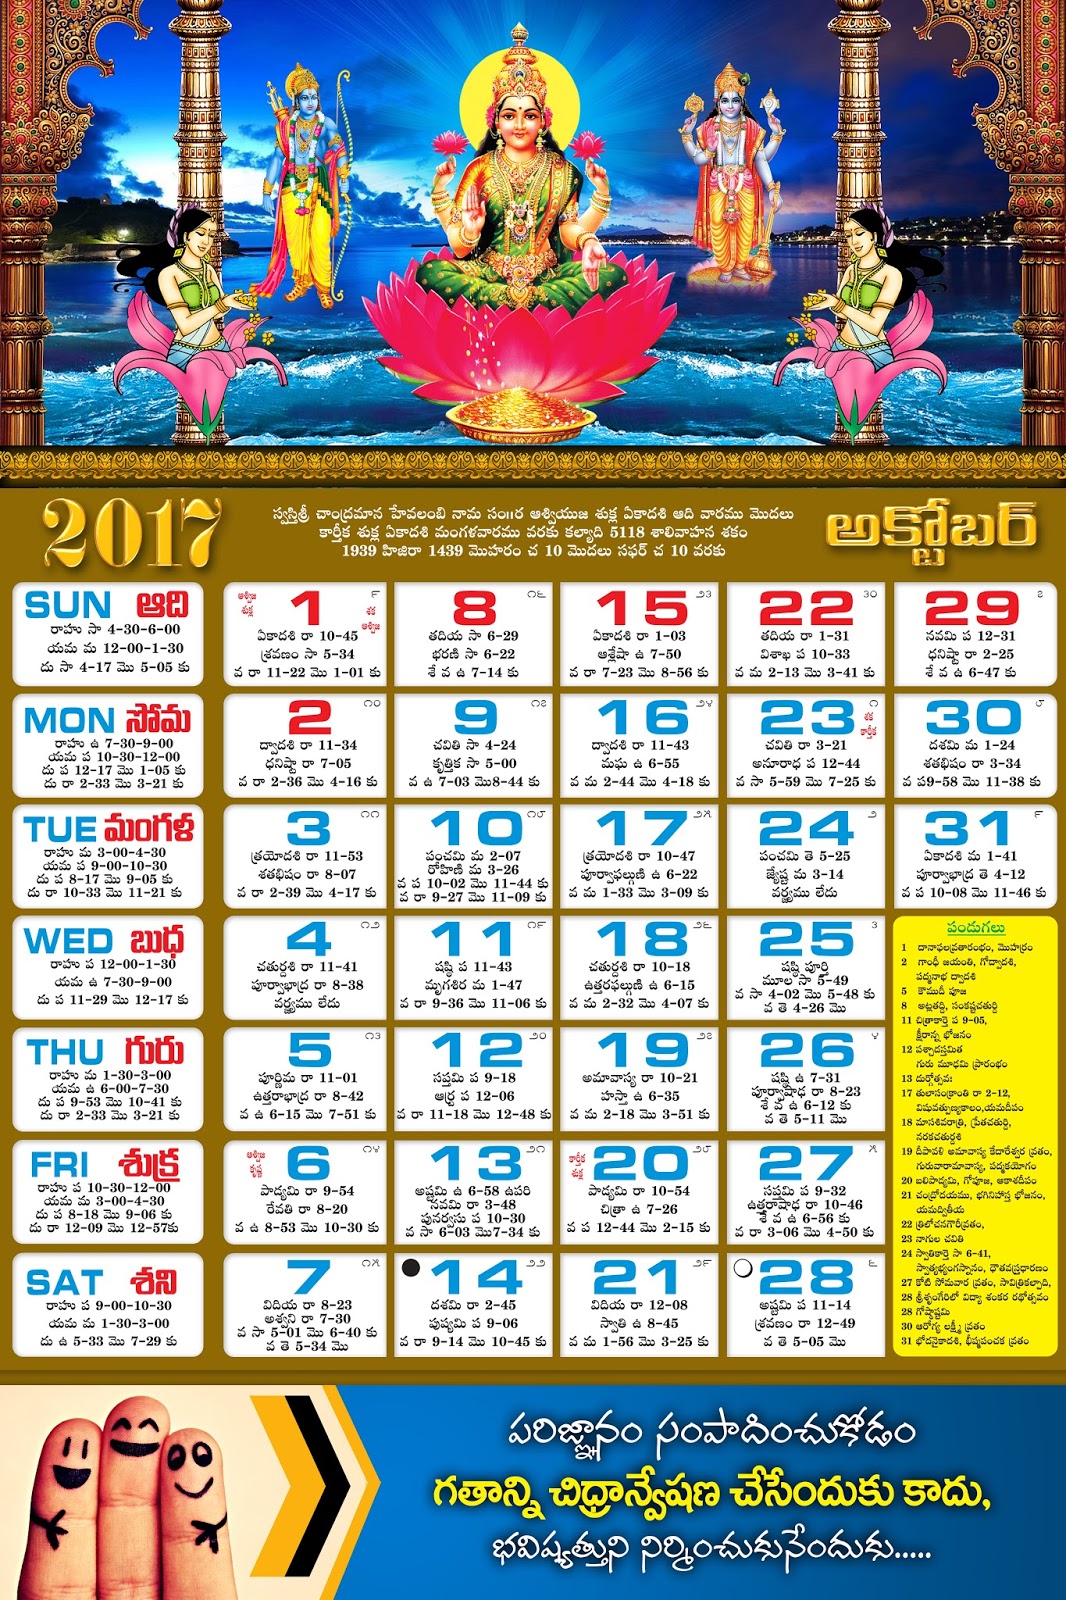 2017-october-telugu-calendar-psd-template-free-downloads-naveengfx